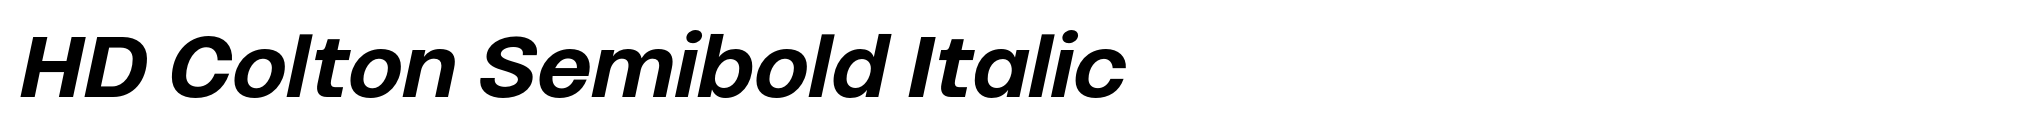 HD Colton Semibold Italic image